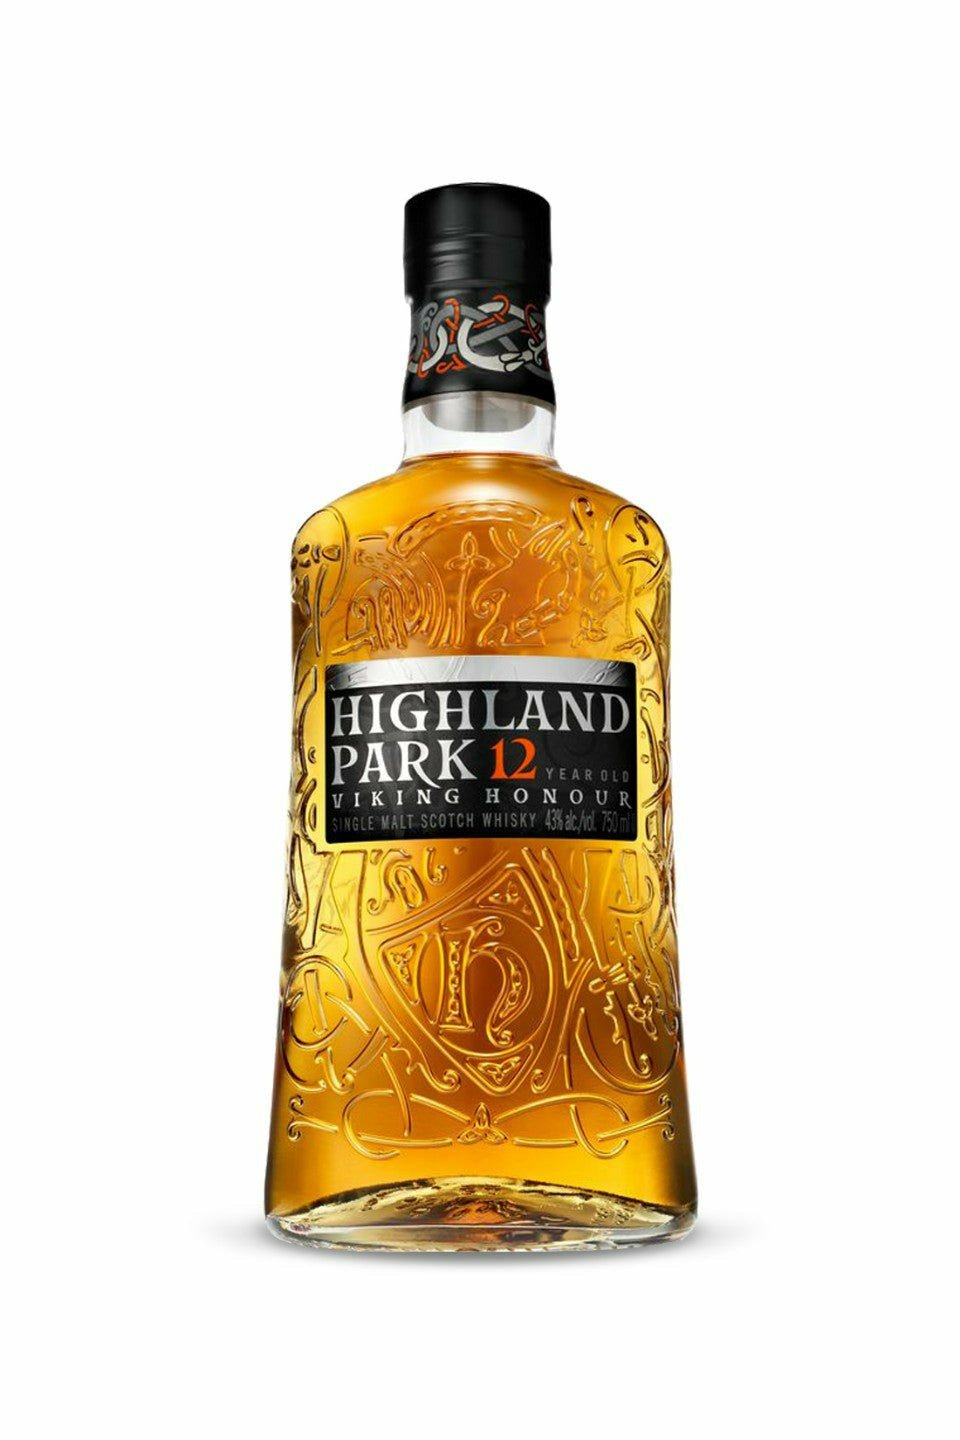 Highland Park Viking Honour 12 Year Old Single Malt Scotch Whisky - francosliquorstore